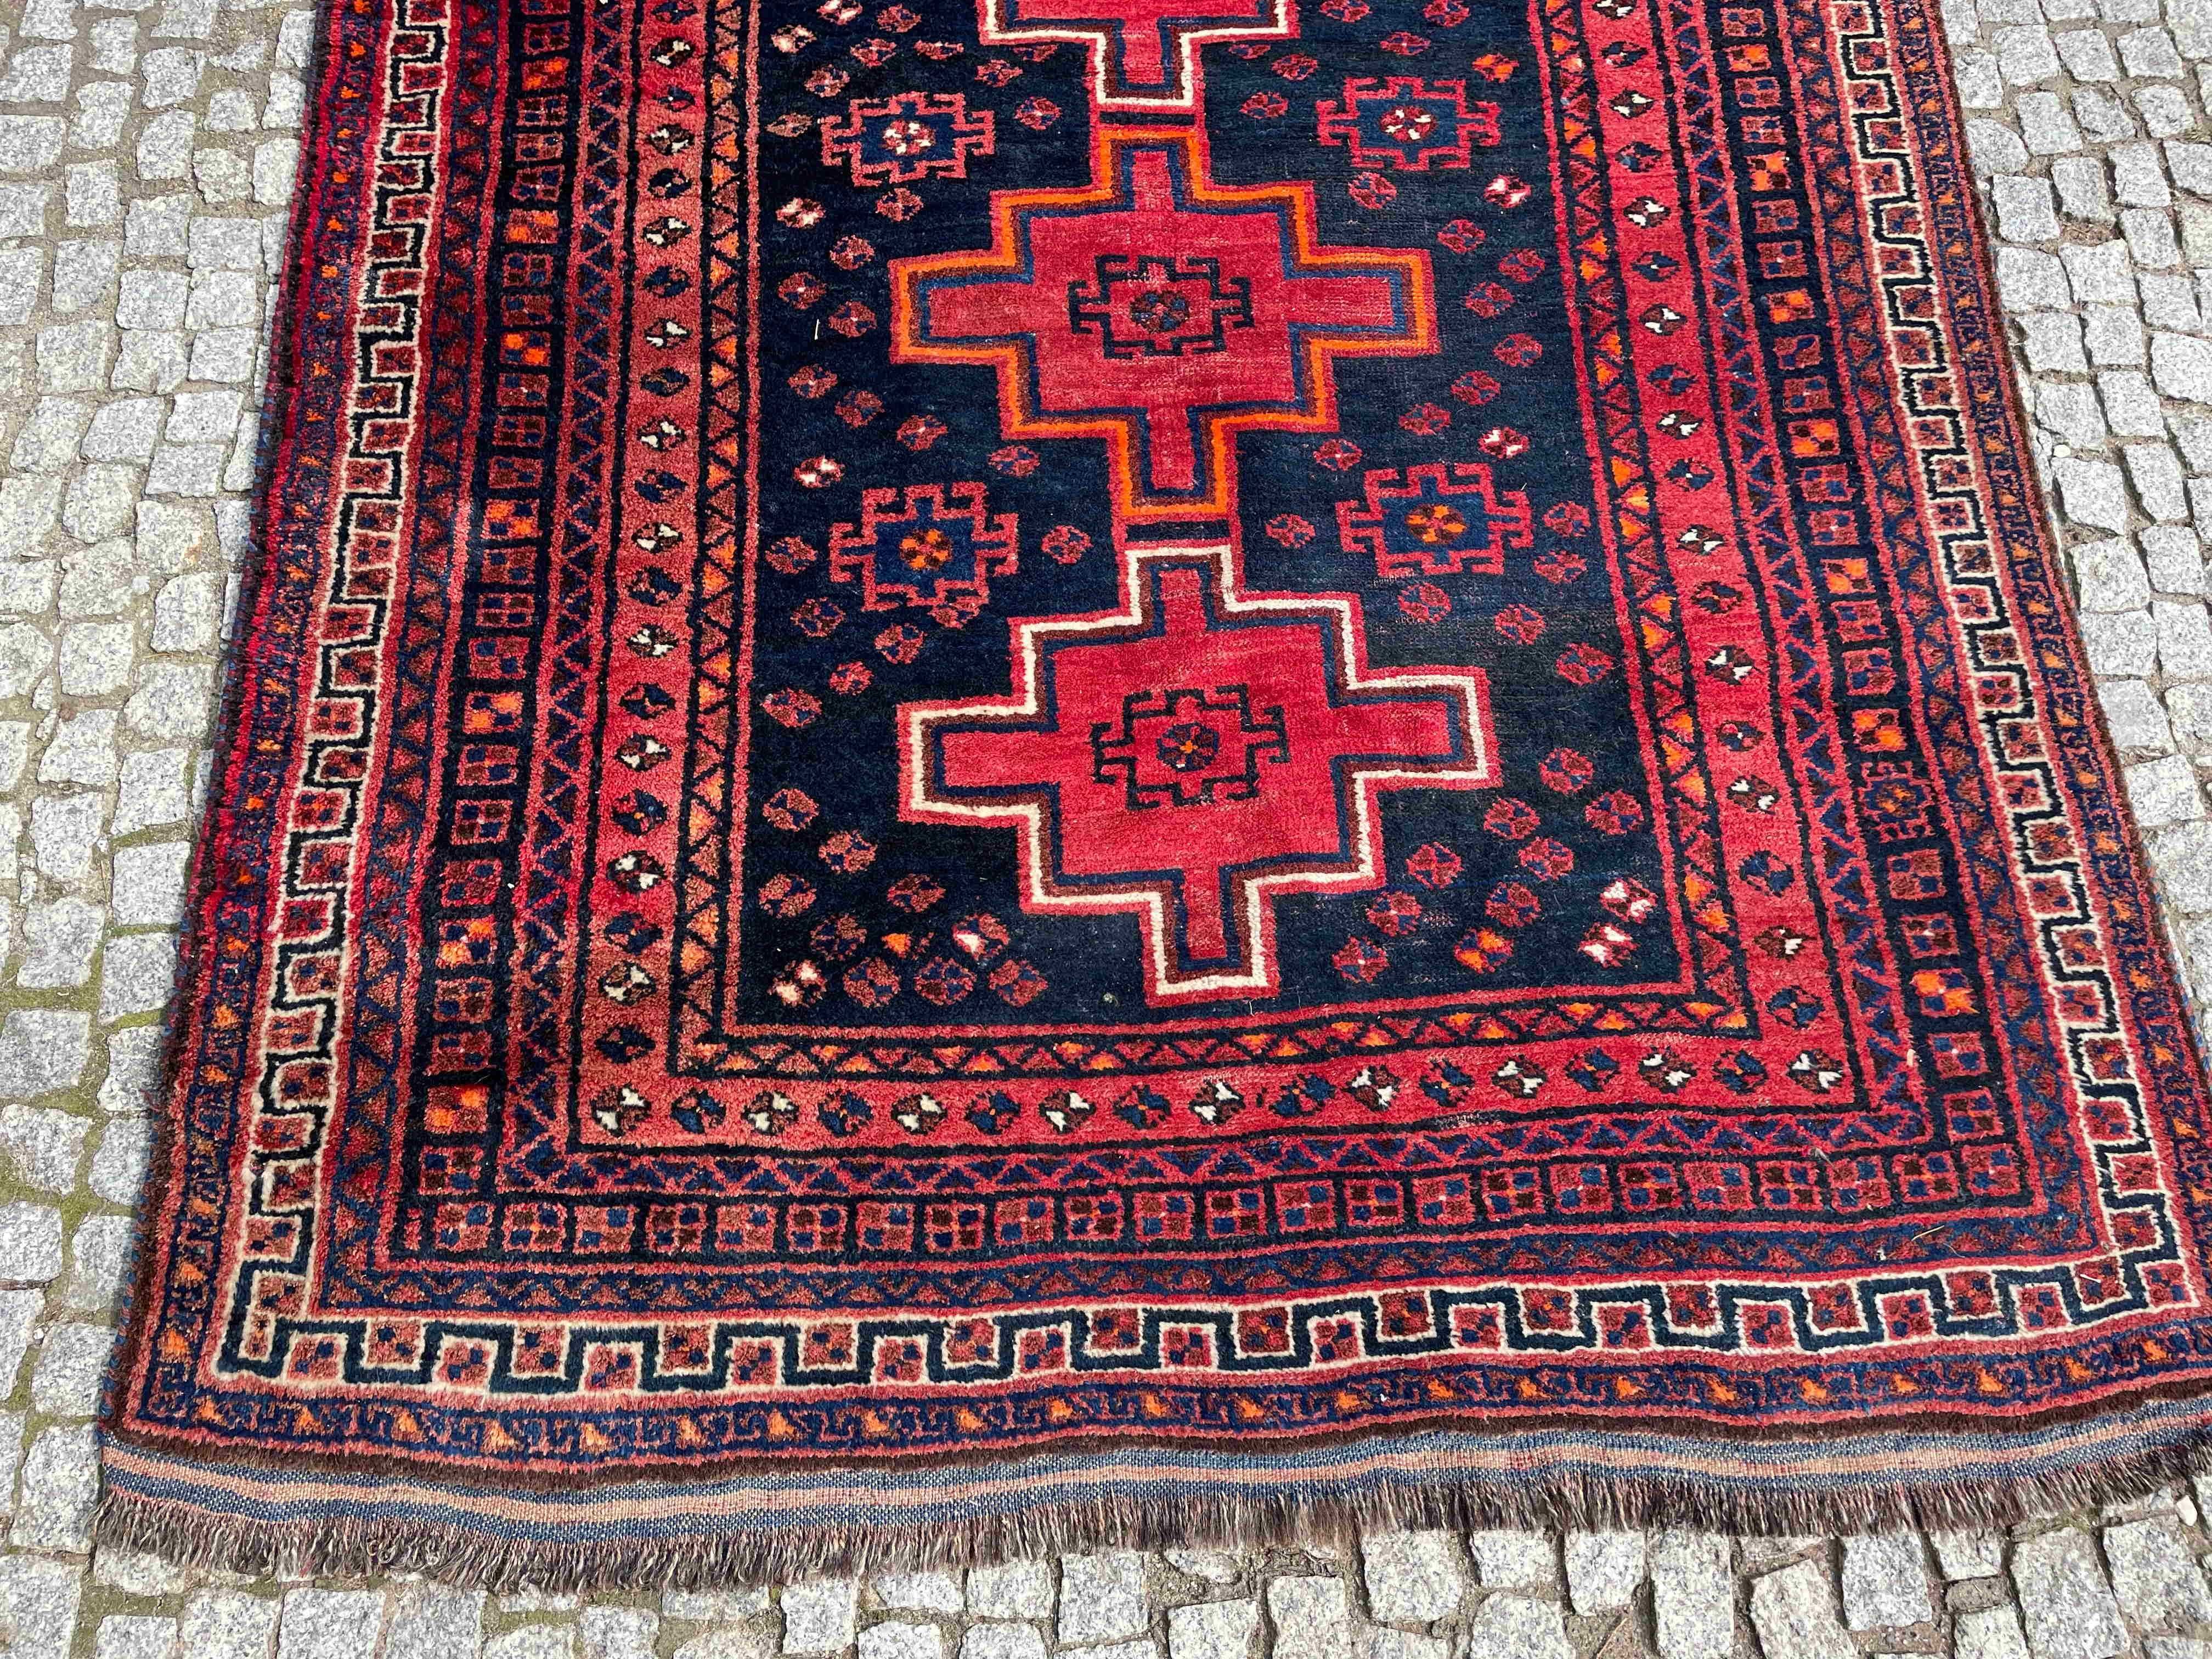 Antyczny dywan perski ręczny YALAMEH 295x144 galeria 11 tys